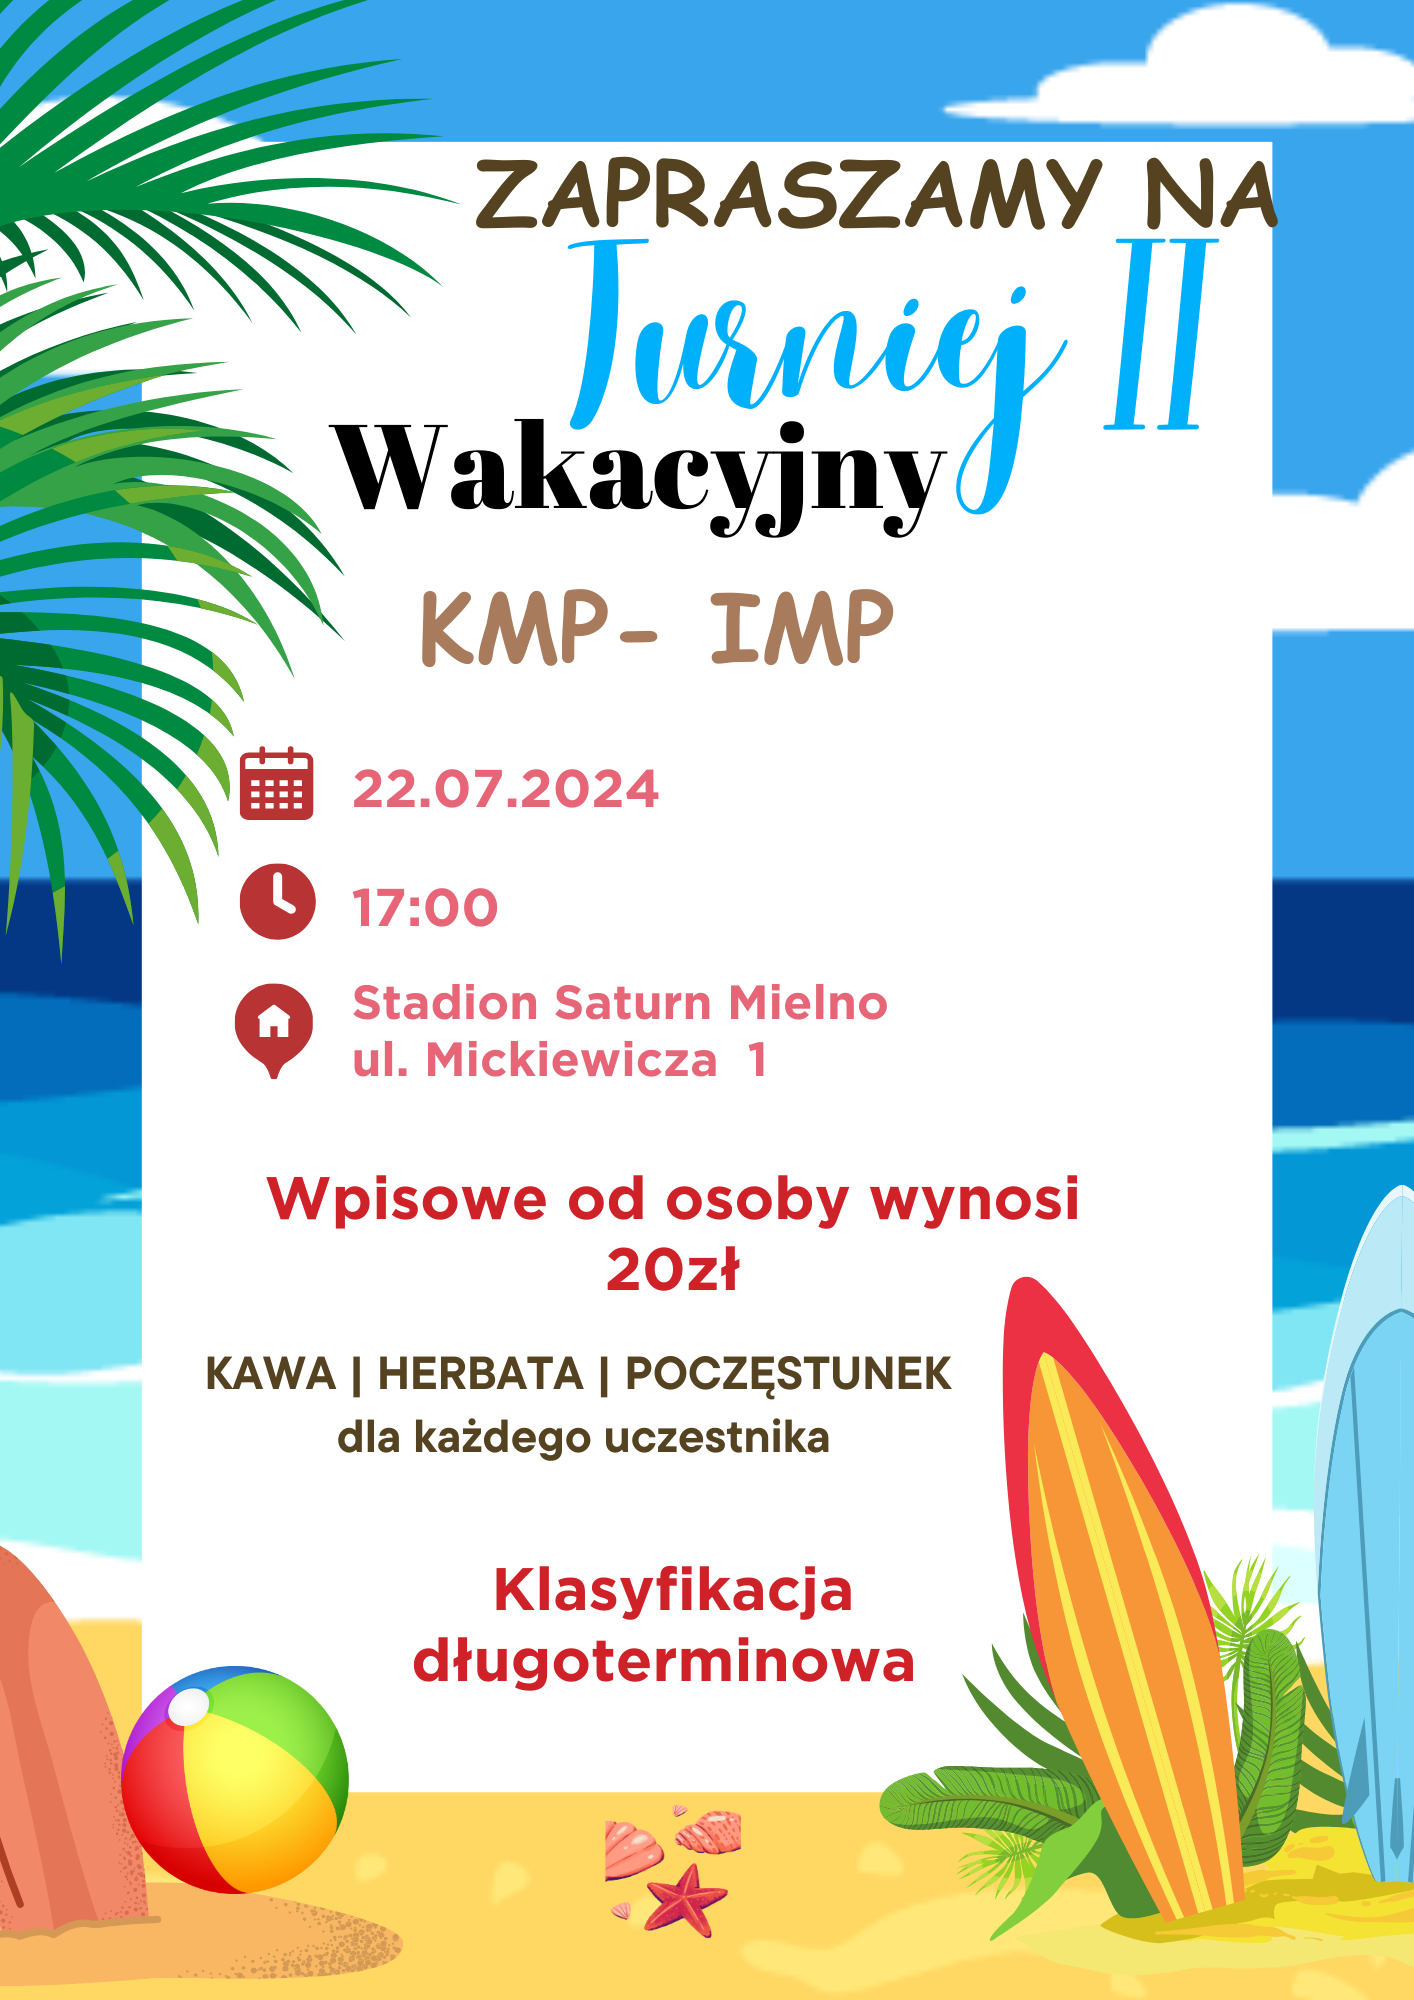 Mielno - Wakacyjny Turniej II - KMP-IMP @ Stadion Saturn Mielno | Mielno | Województwo zachodniopomorskie | Polska